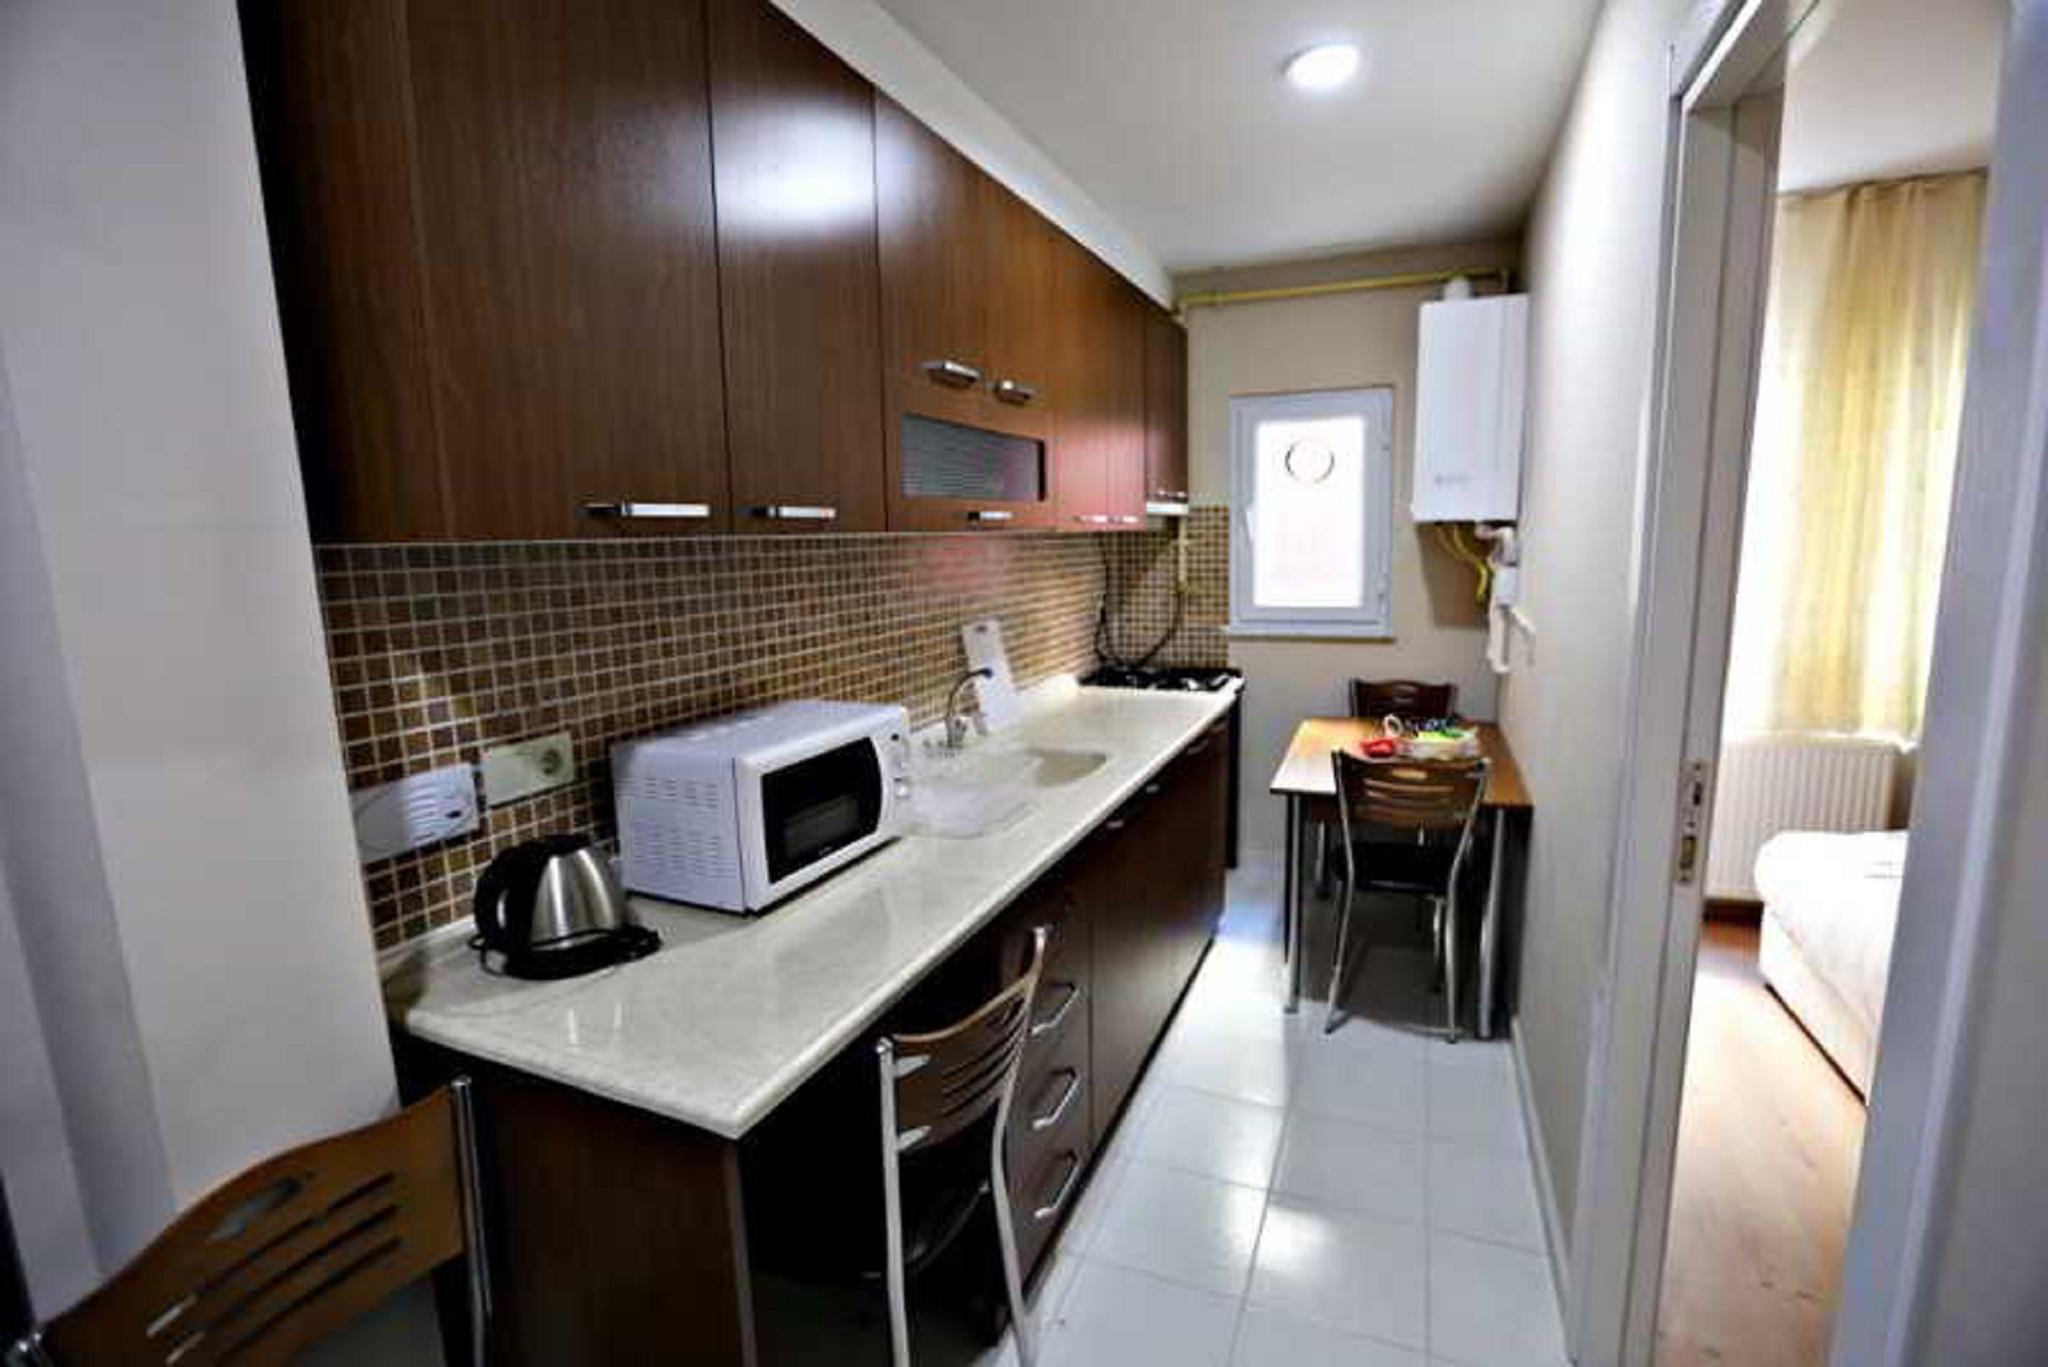 https://istanbul-family-apartments.hotelmix.co.uk/data/Photos/OriginalPhoto/12801/1280150/1280150752/Istanbul-Family-Apartment-Exterior.JPEG